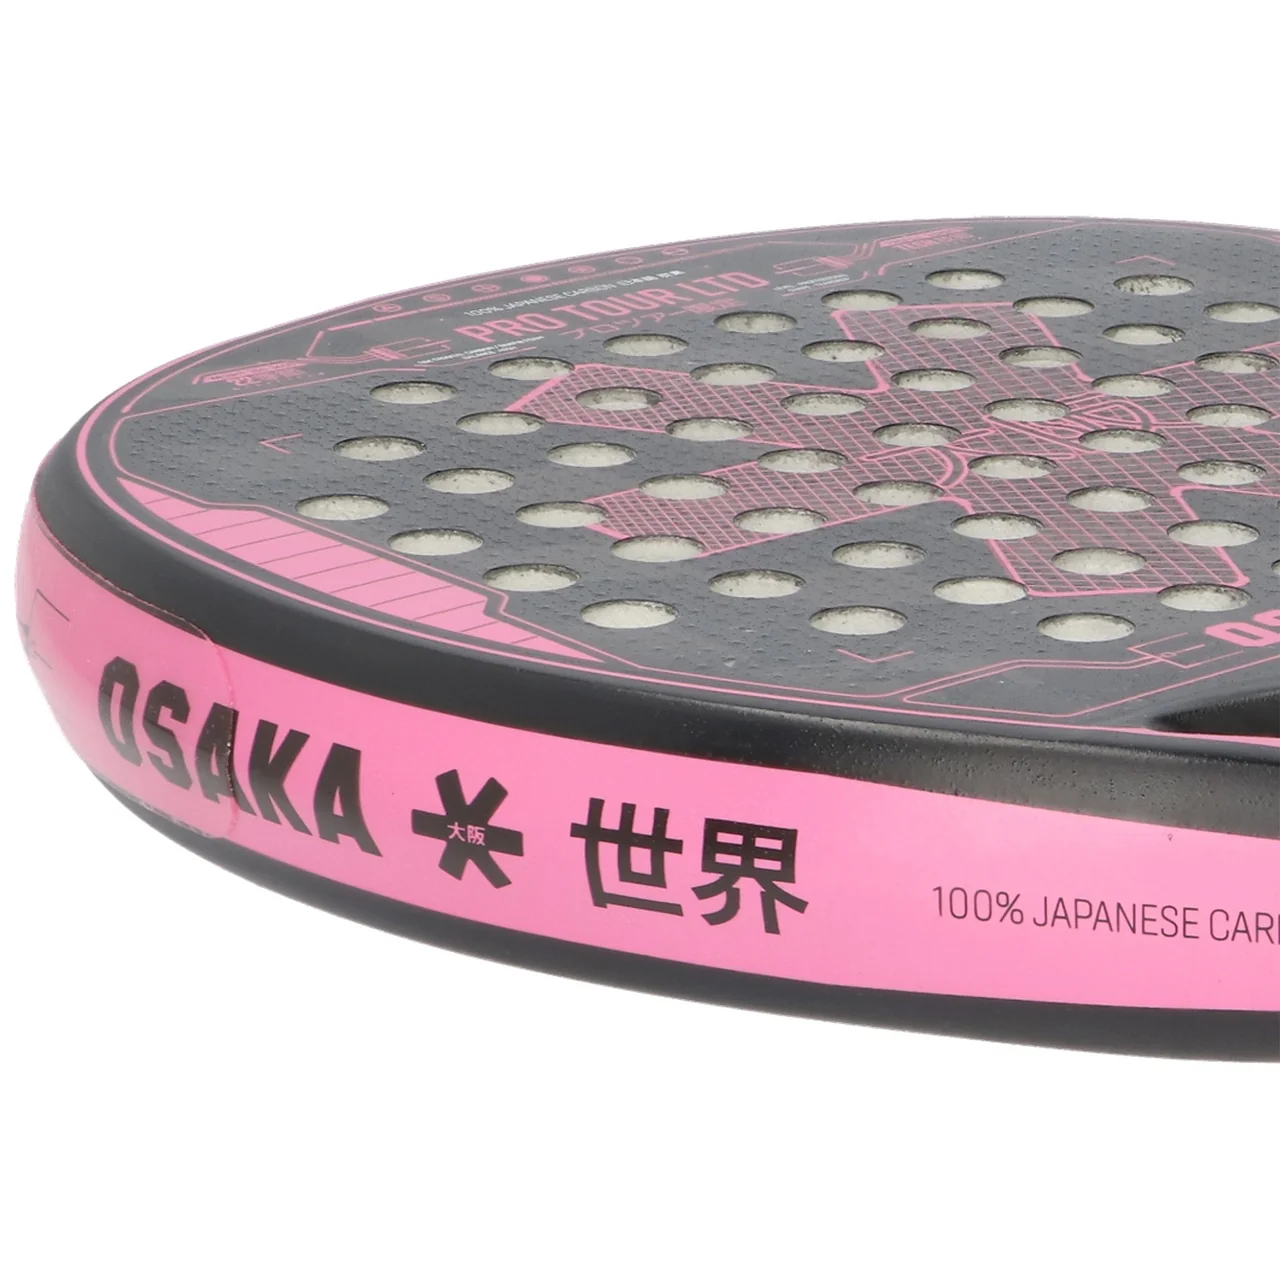 Osaka Pro Tour Limited Edition Tech Black/Pink